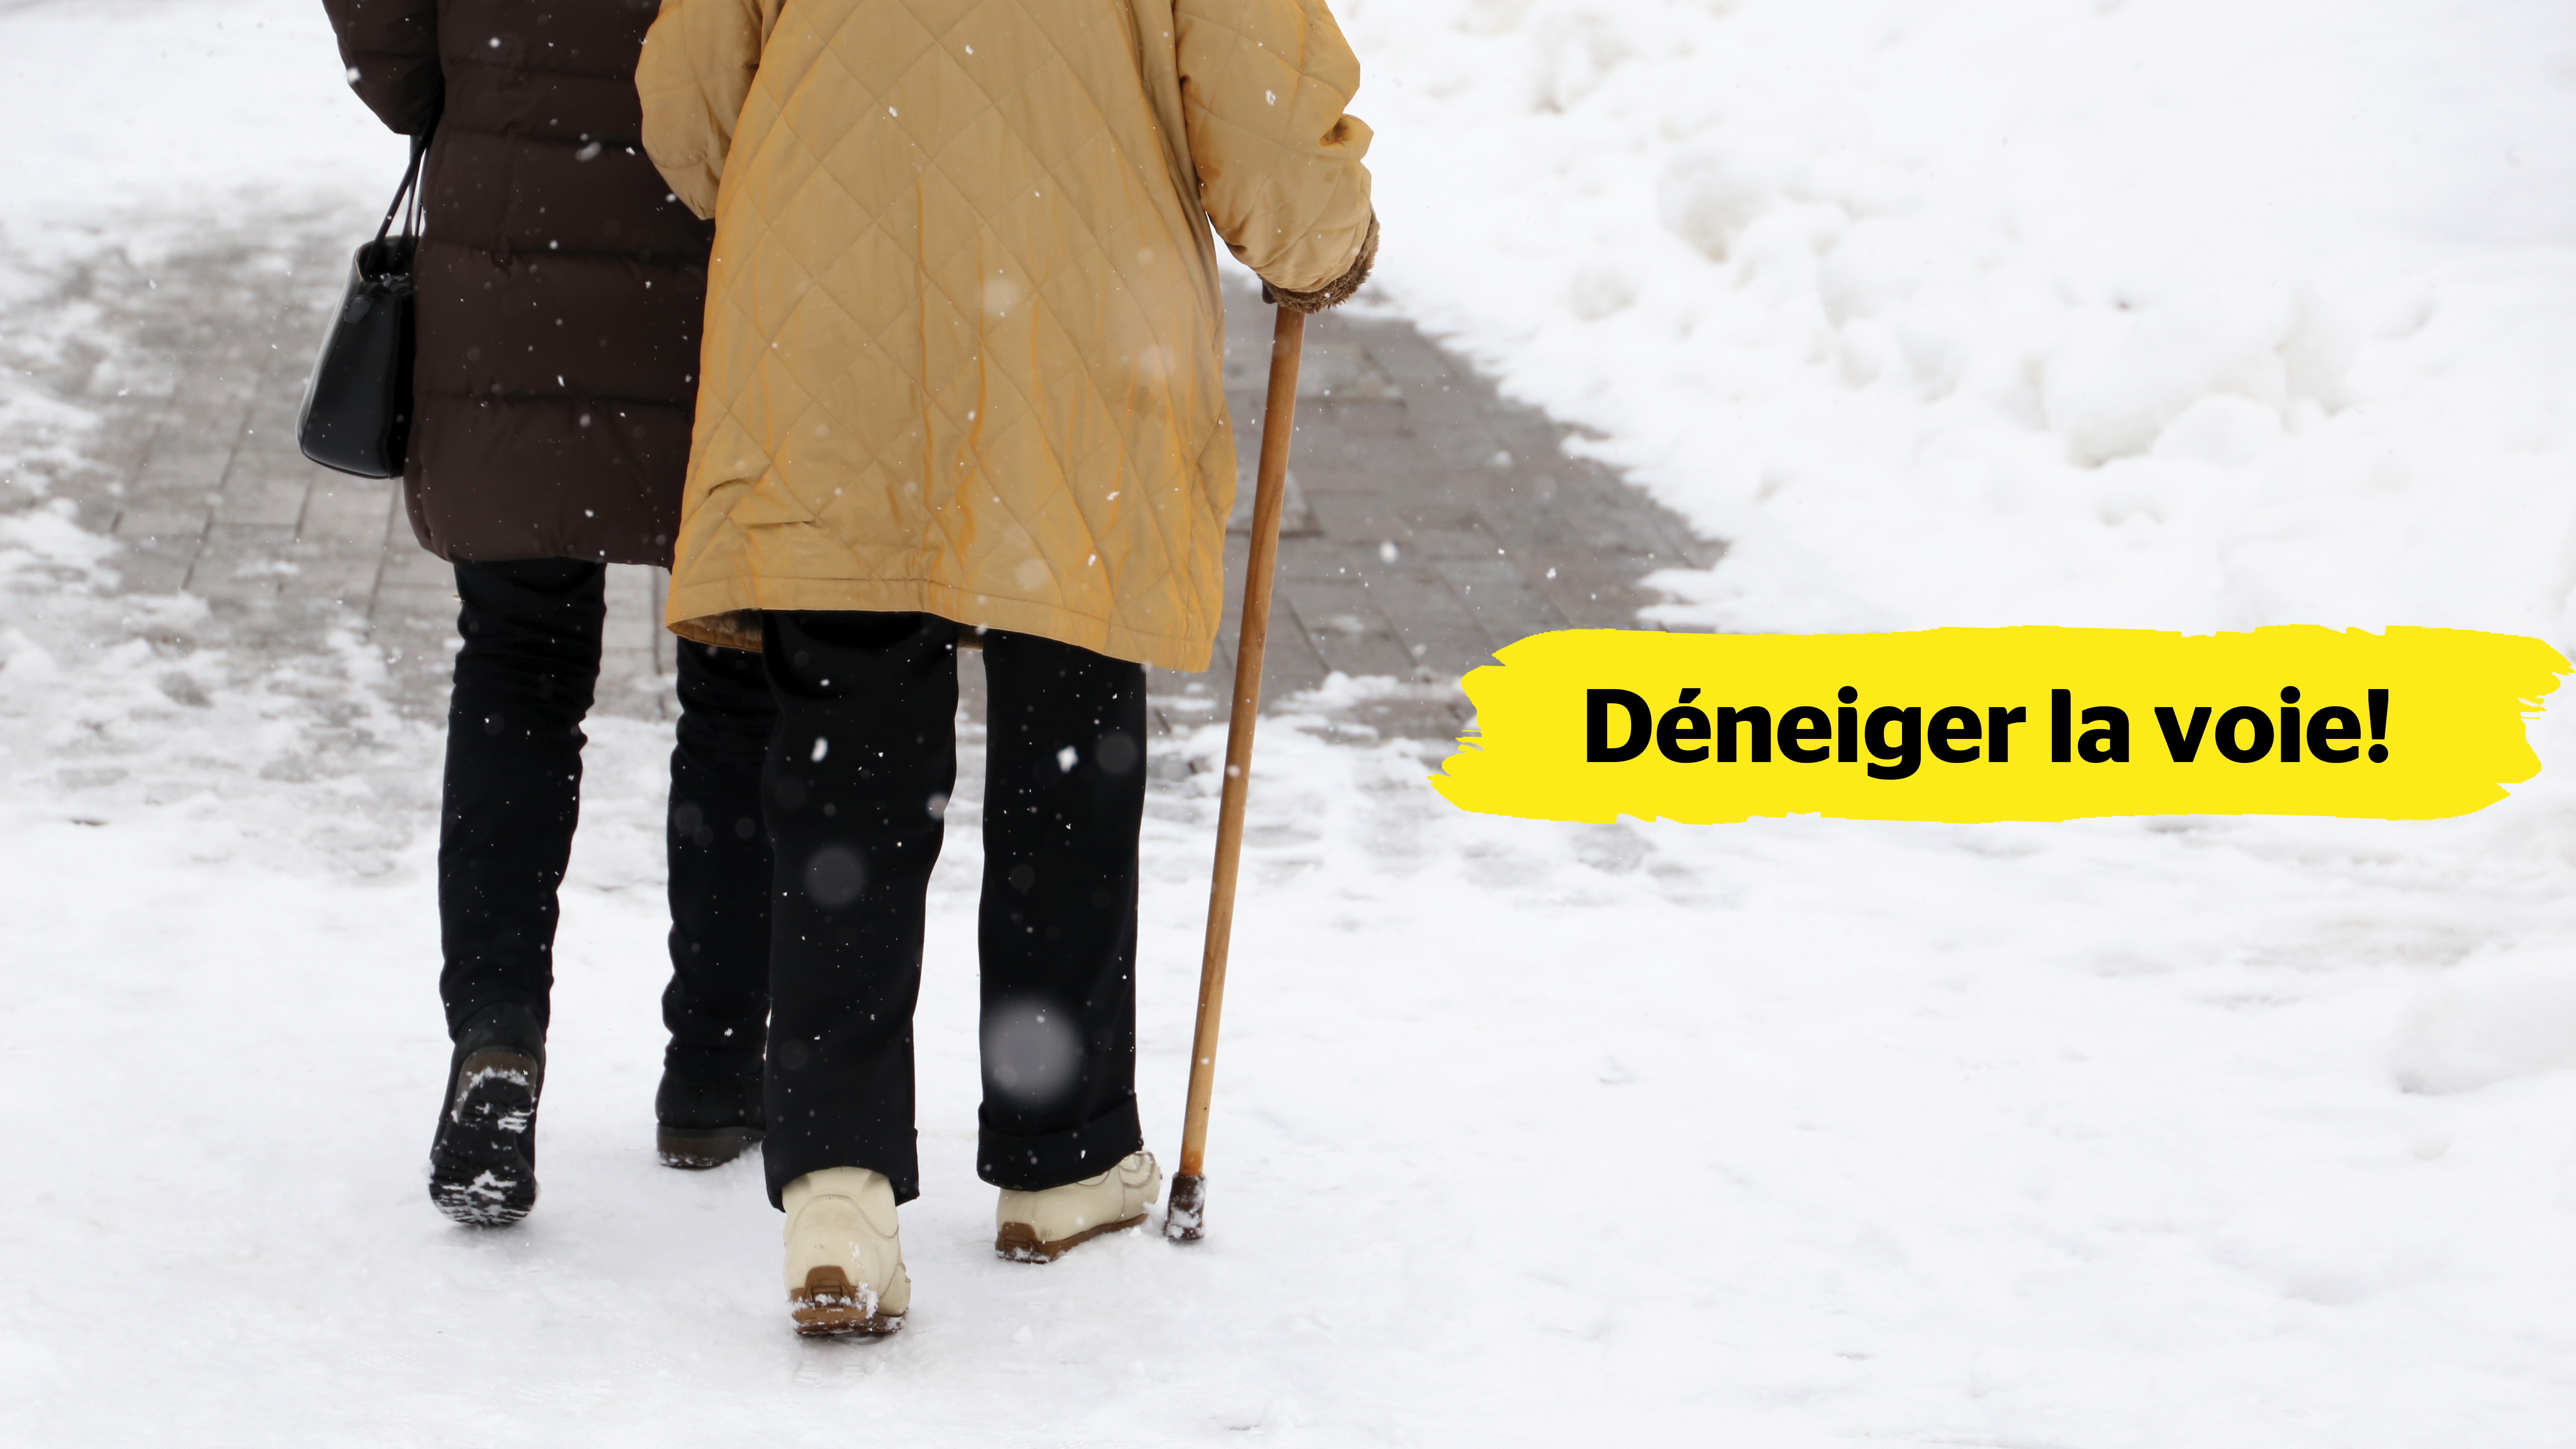 Deux personnes de dos marchent sur un sentier enneigé. Une personne âgée utilise une canne de marche et tient le coude de la personne qui l’accompagne.  Dans le centre de l’image, une bannière jaune affichant le texte « Déneiger la voie! » est superposée.